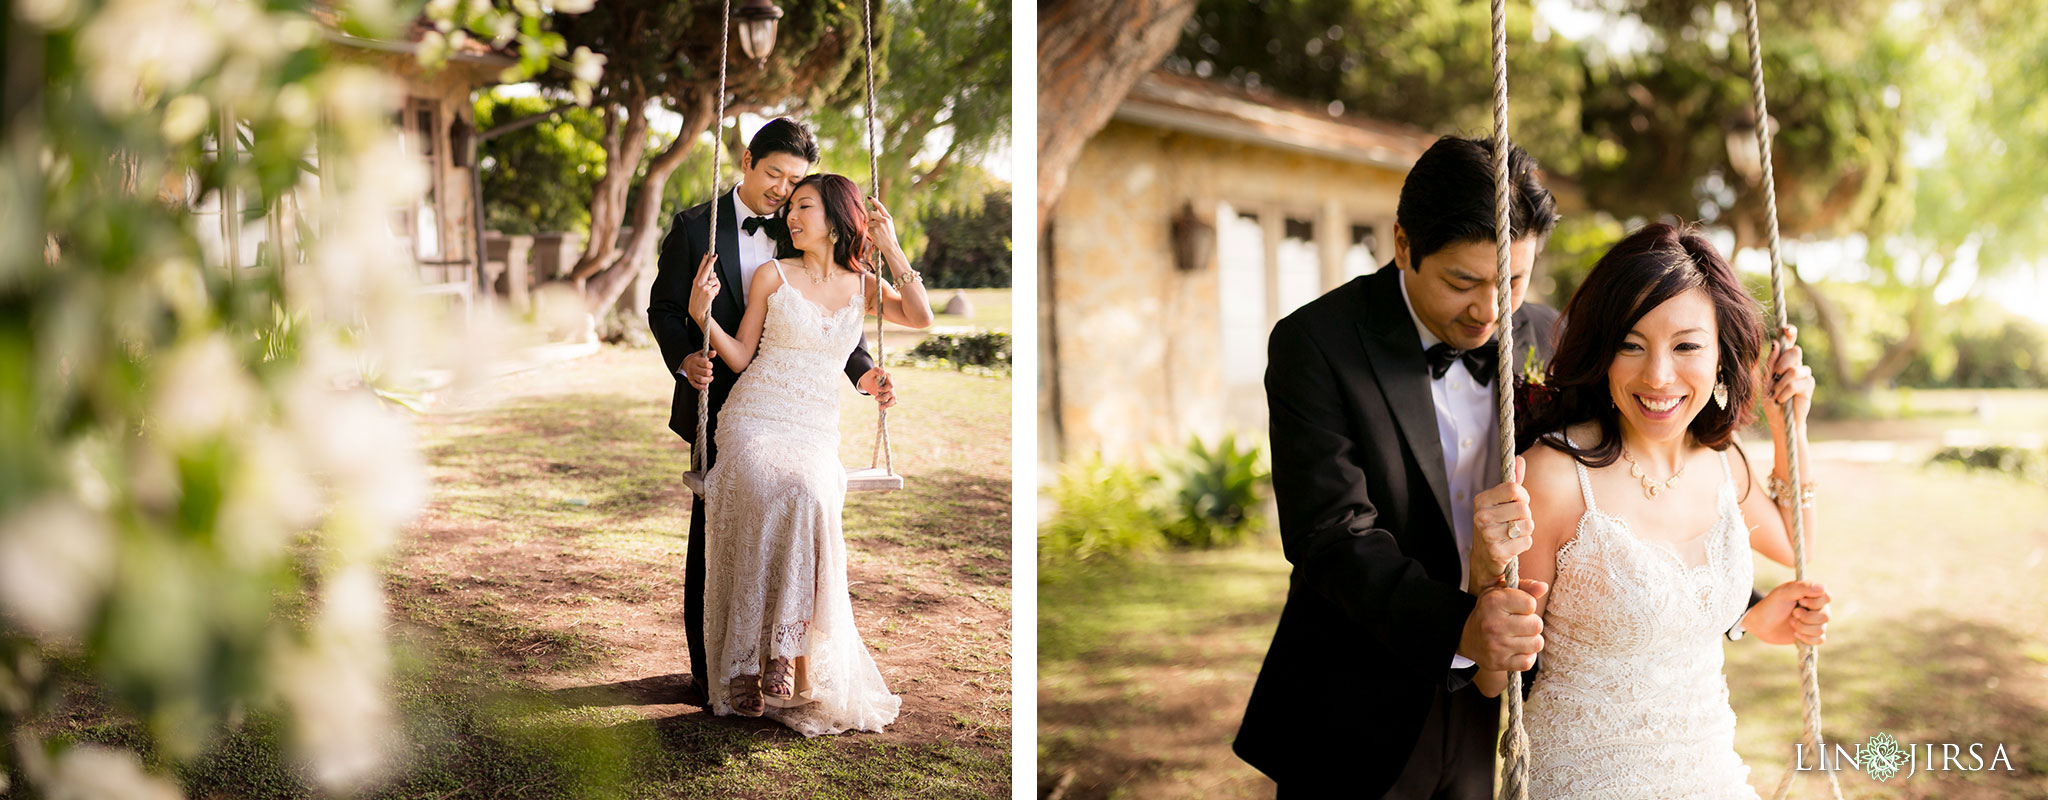 20 wayfarers chapel wedding photography